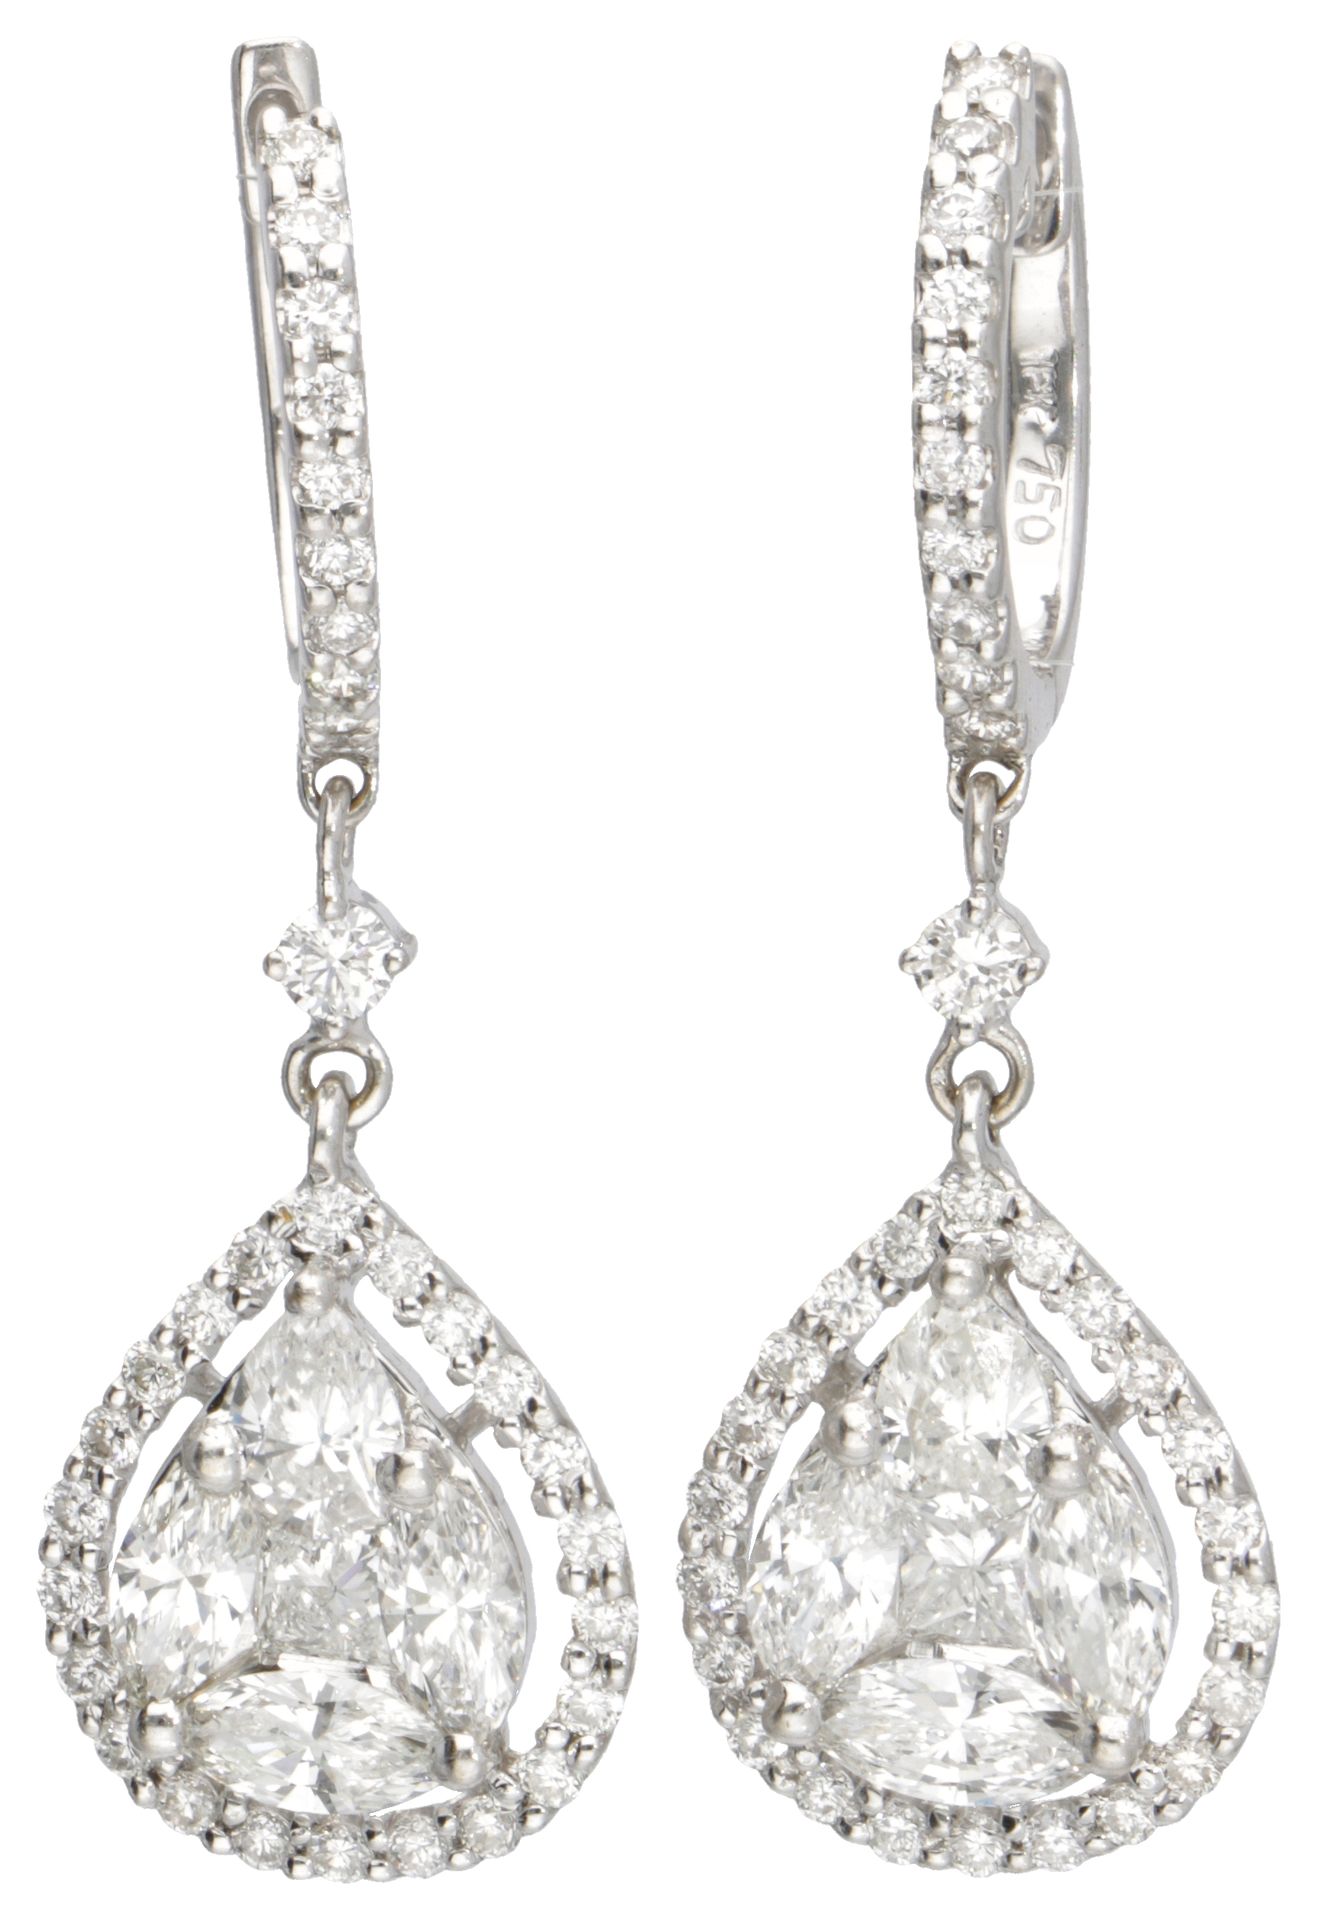 18K. White gold teardrop earrings set with approx. 2.15 ct. Diamond. 印章：750。镶嵌有2&hellip;